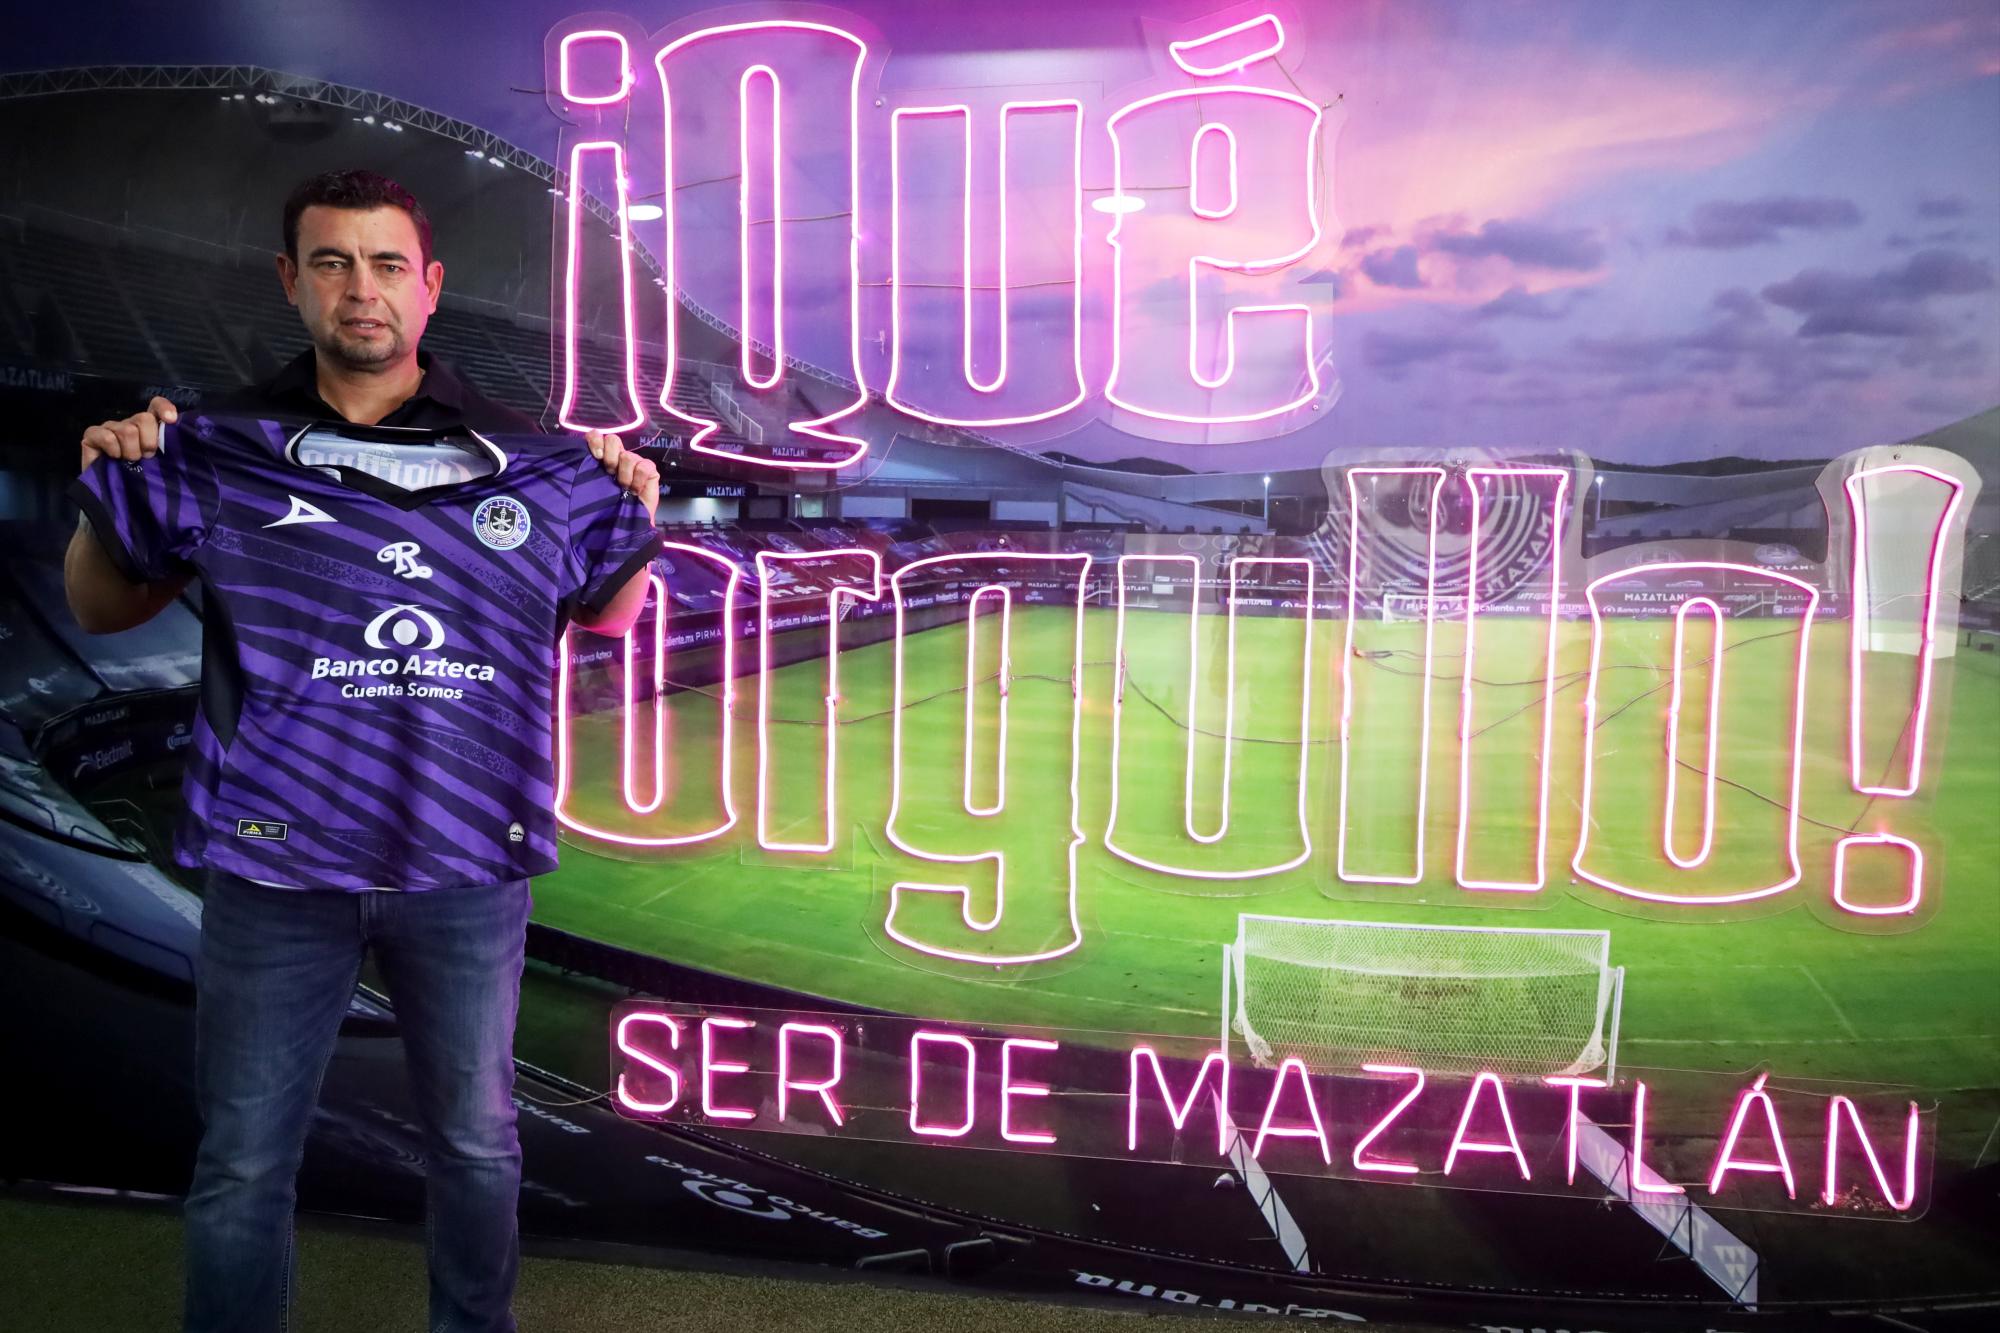 $!Eliud Ruiz es el nuevo director de futbol de Mazatlán Femenil